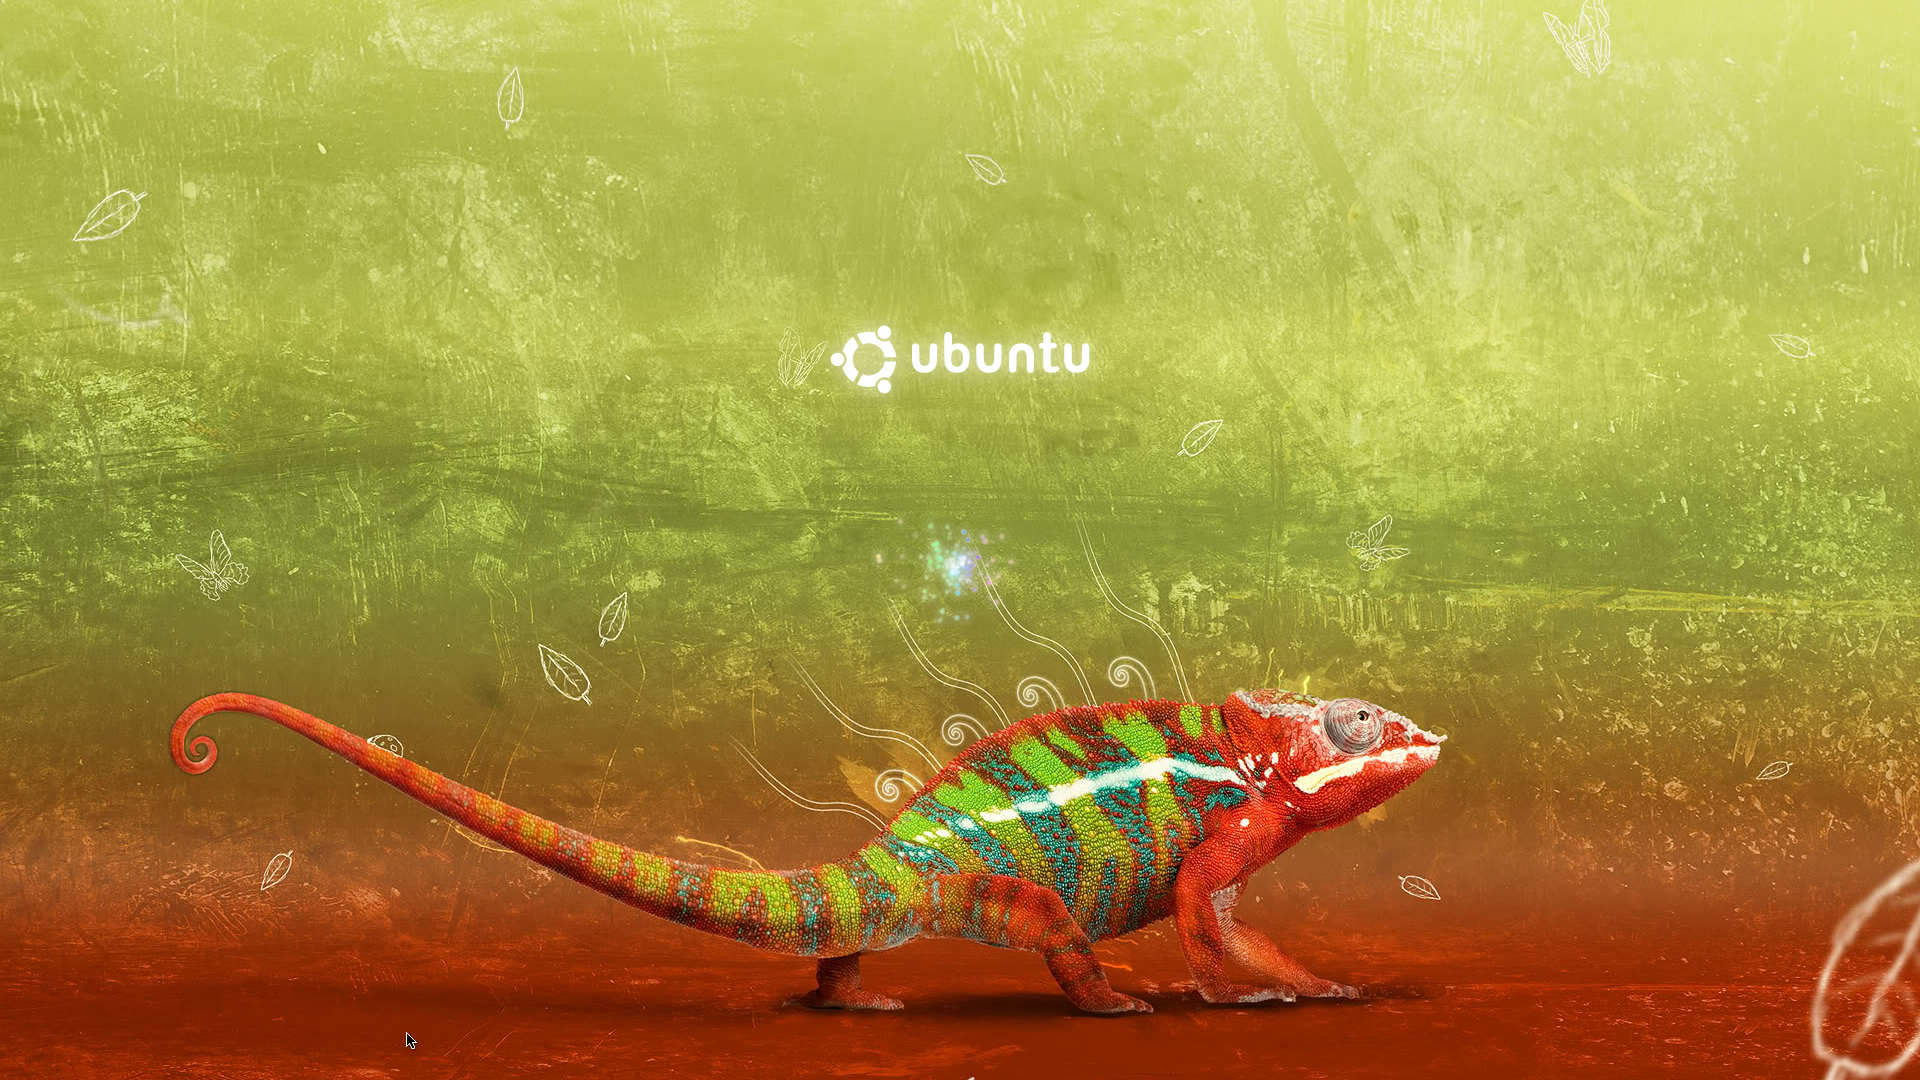 Desktop, theme, ubuntu (#90178)